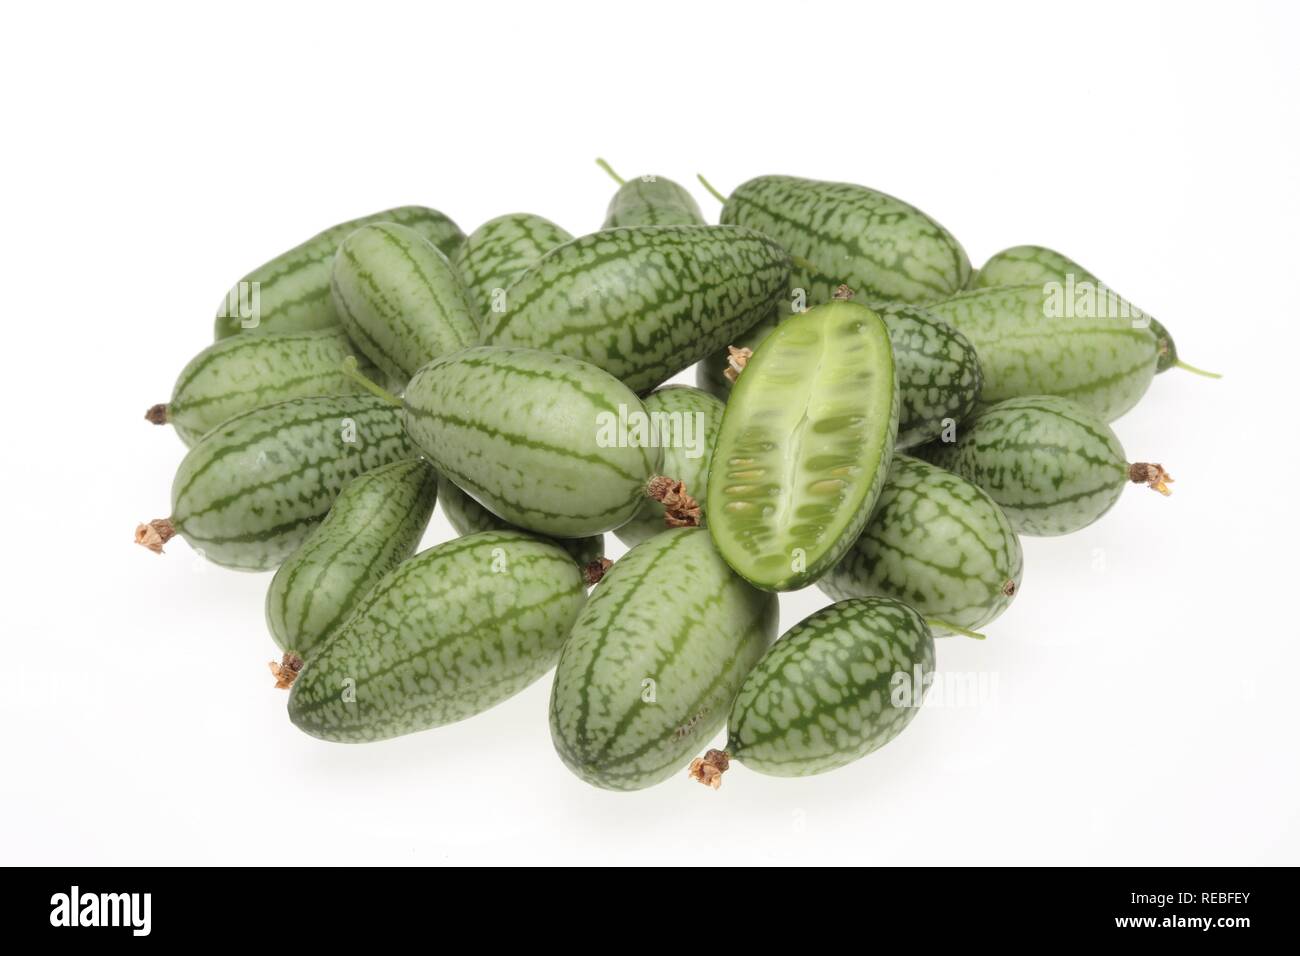 Mexikanische saure Gurke, mexikanische Miniatur Wassermelone oder Maus Melone (Meliothria scabra), Gemüse Stockfoto